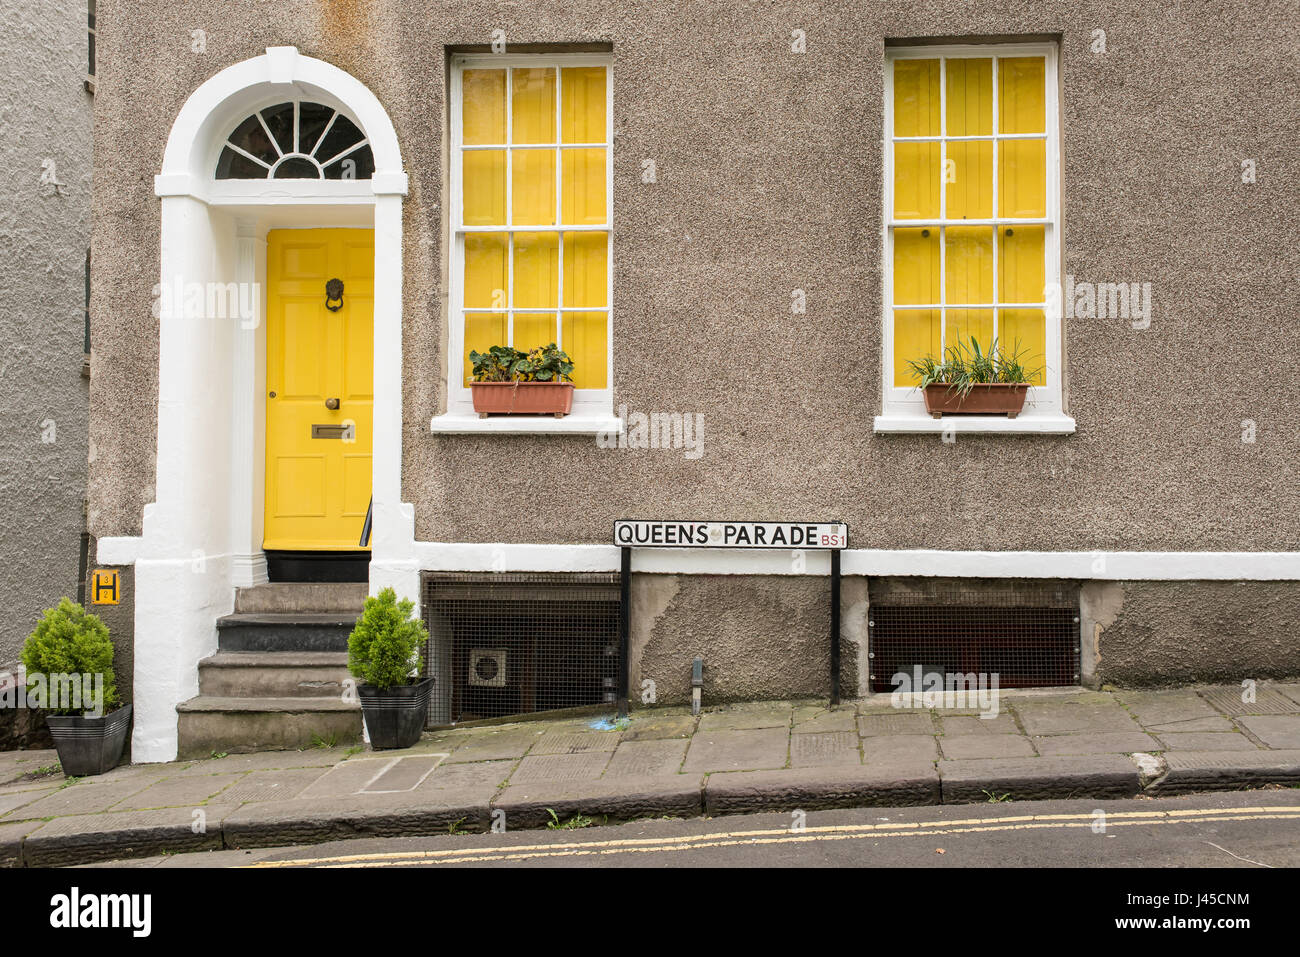 Exterieur des britischen Traditionshauses in Queens Parade, Bristol, UK. Mit grauen Wänden, gelbe vordere Tür und zwei Fenstern mit gelben Vorhänge. Blumen Stockfoto